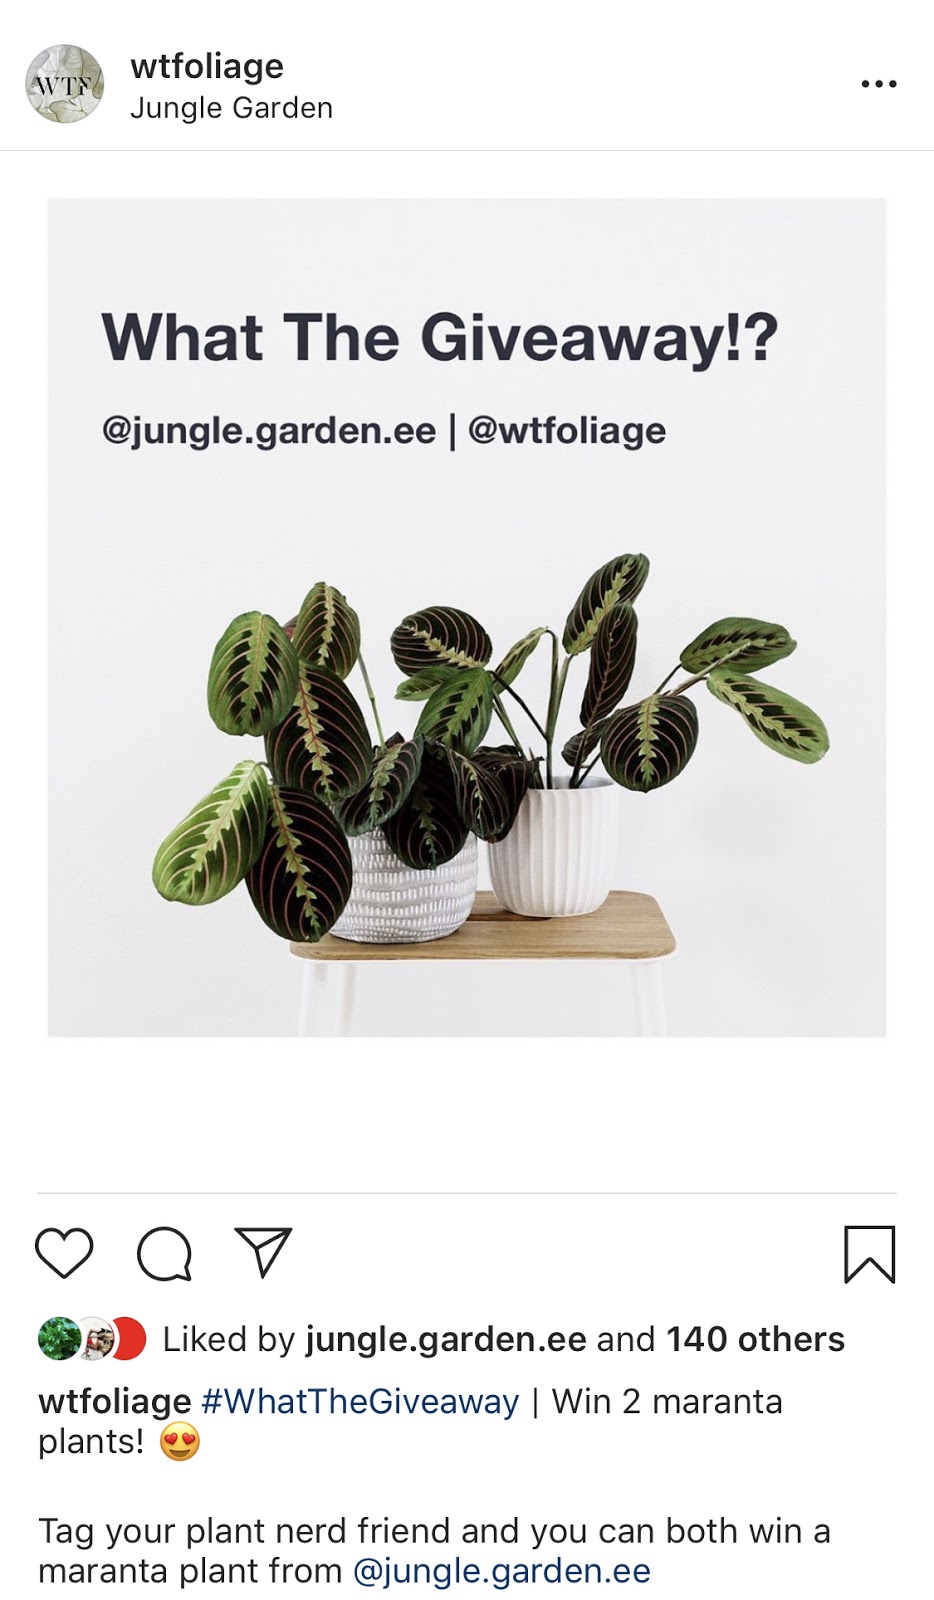 instagram giveaway example